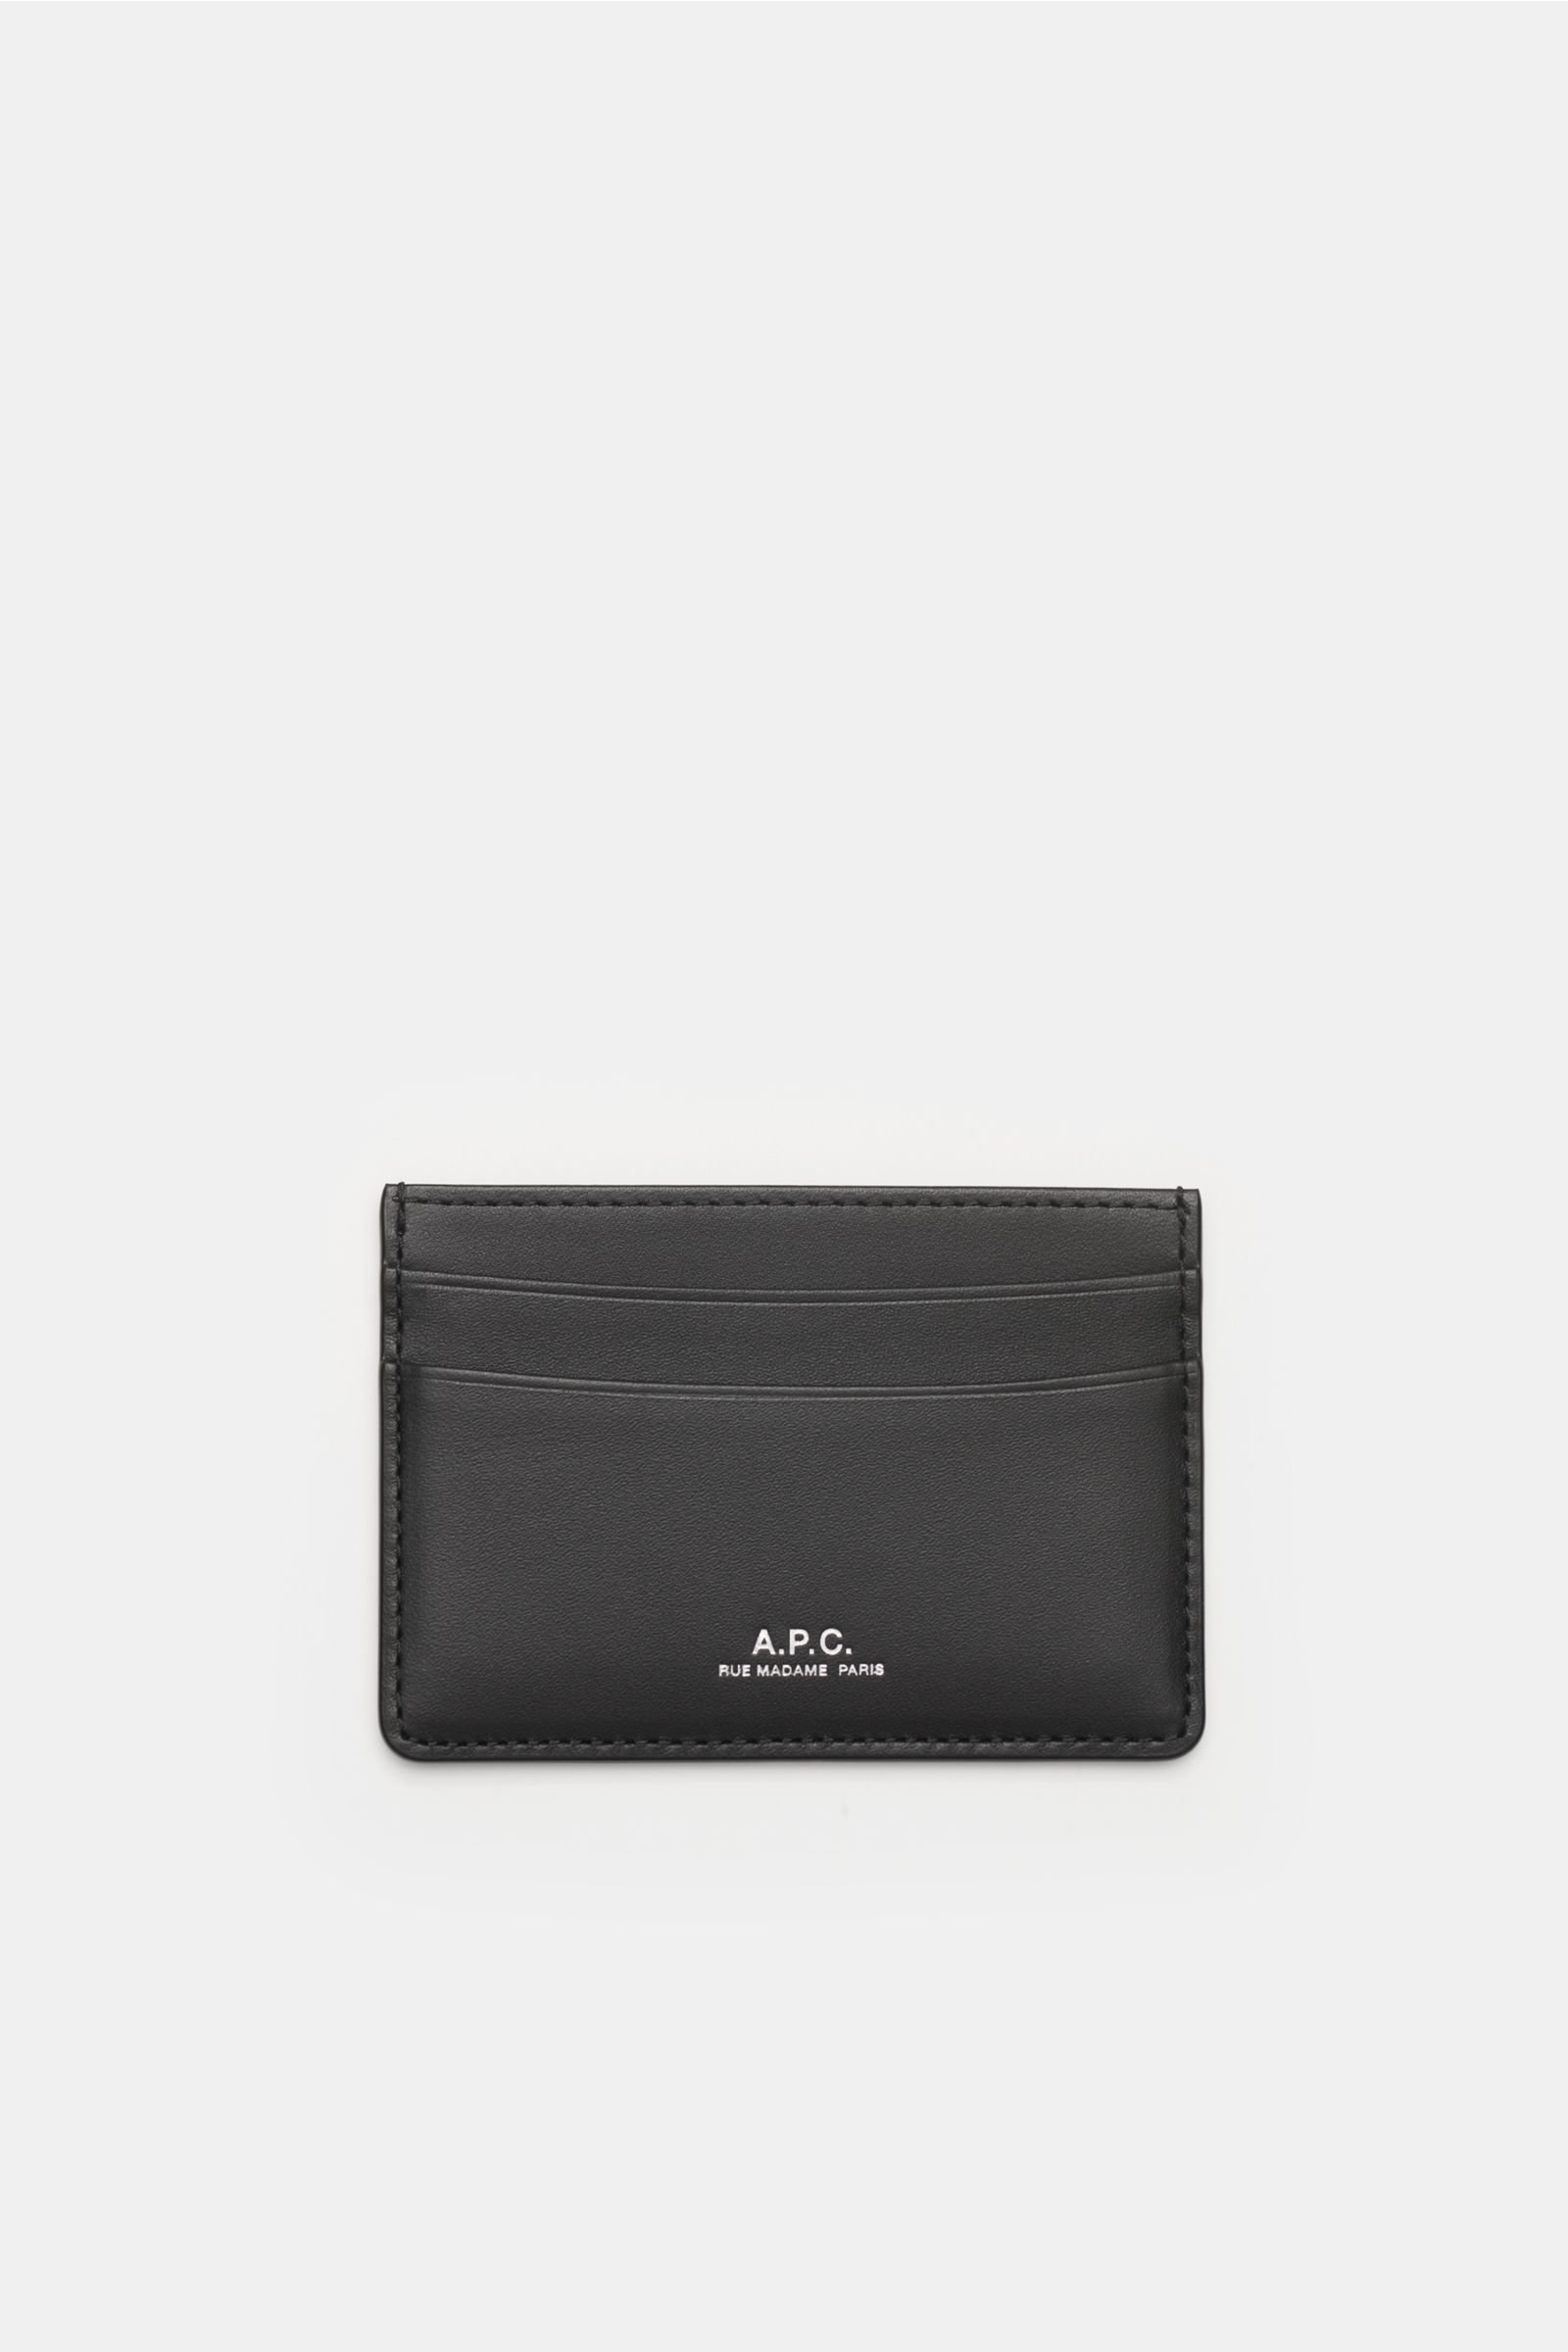 Credit card holder 'André' black